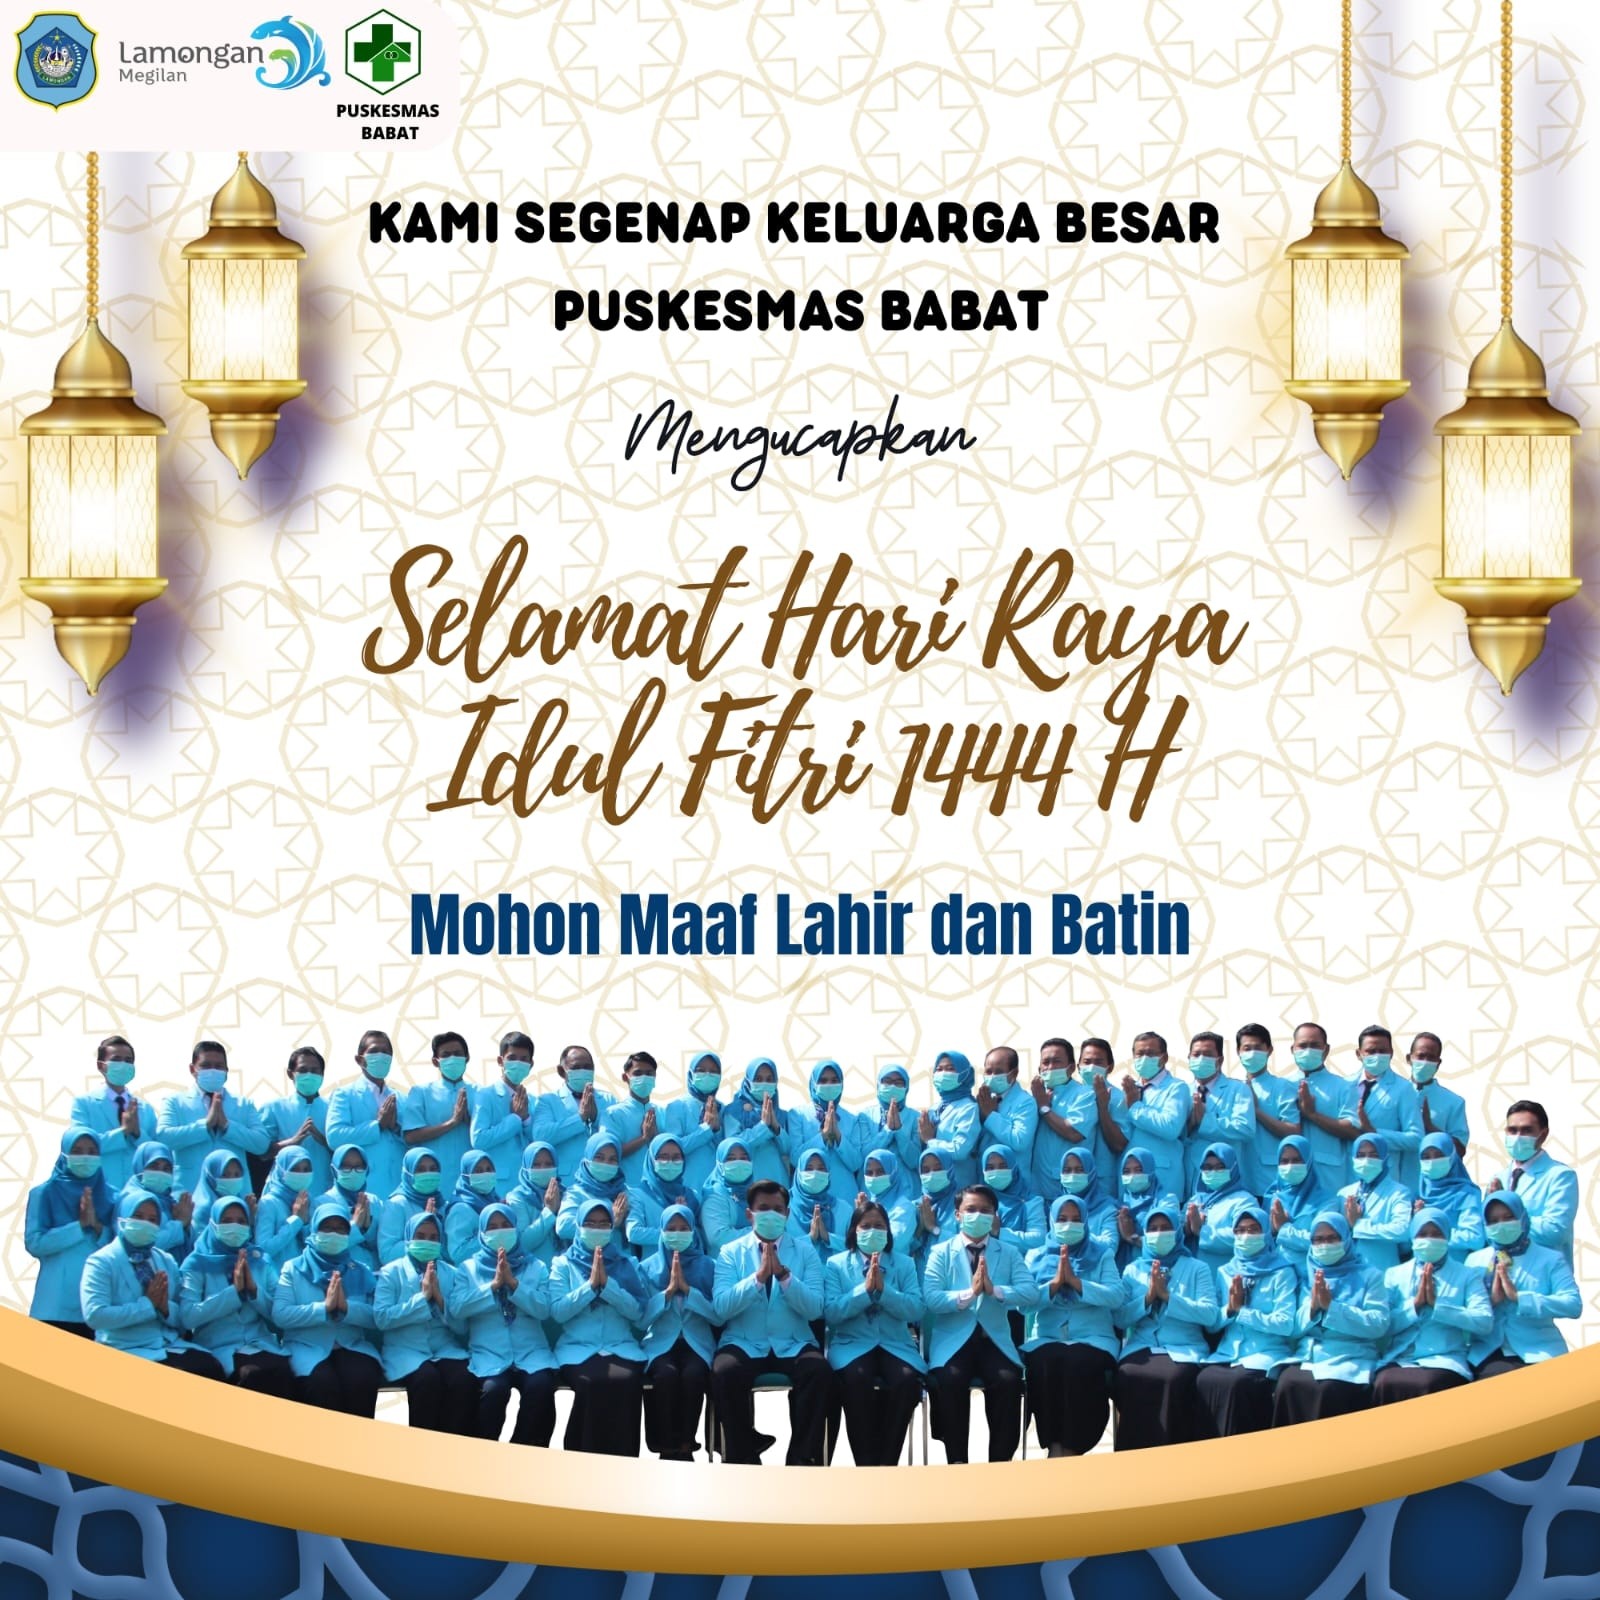 Kami segenap keluarga besar Puskesmas Babat mengucapkan "Selamat Hari Raya Idul Fitri 1444 H, Mohon Maaf Lahir dan Batin"?